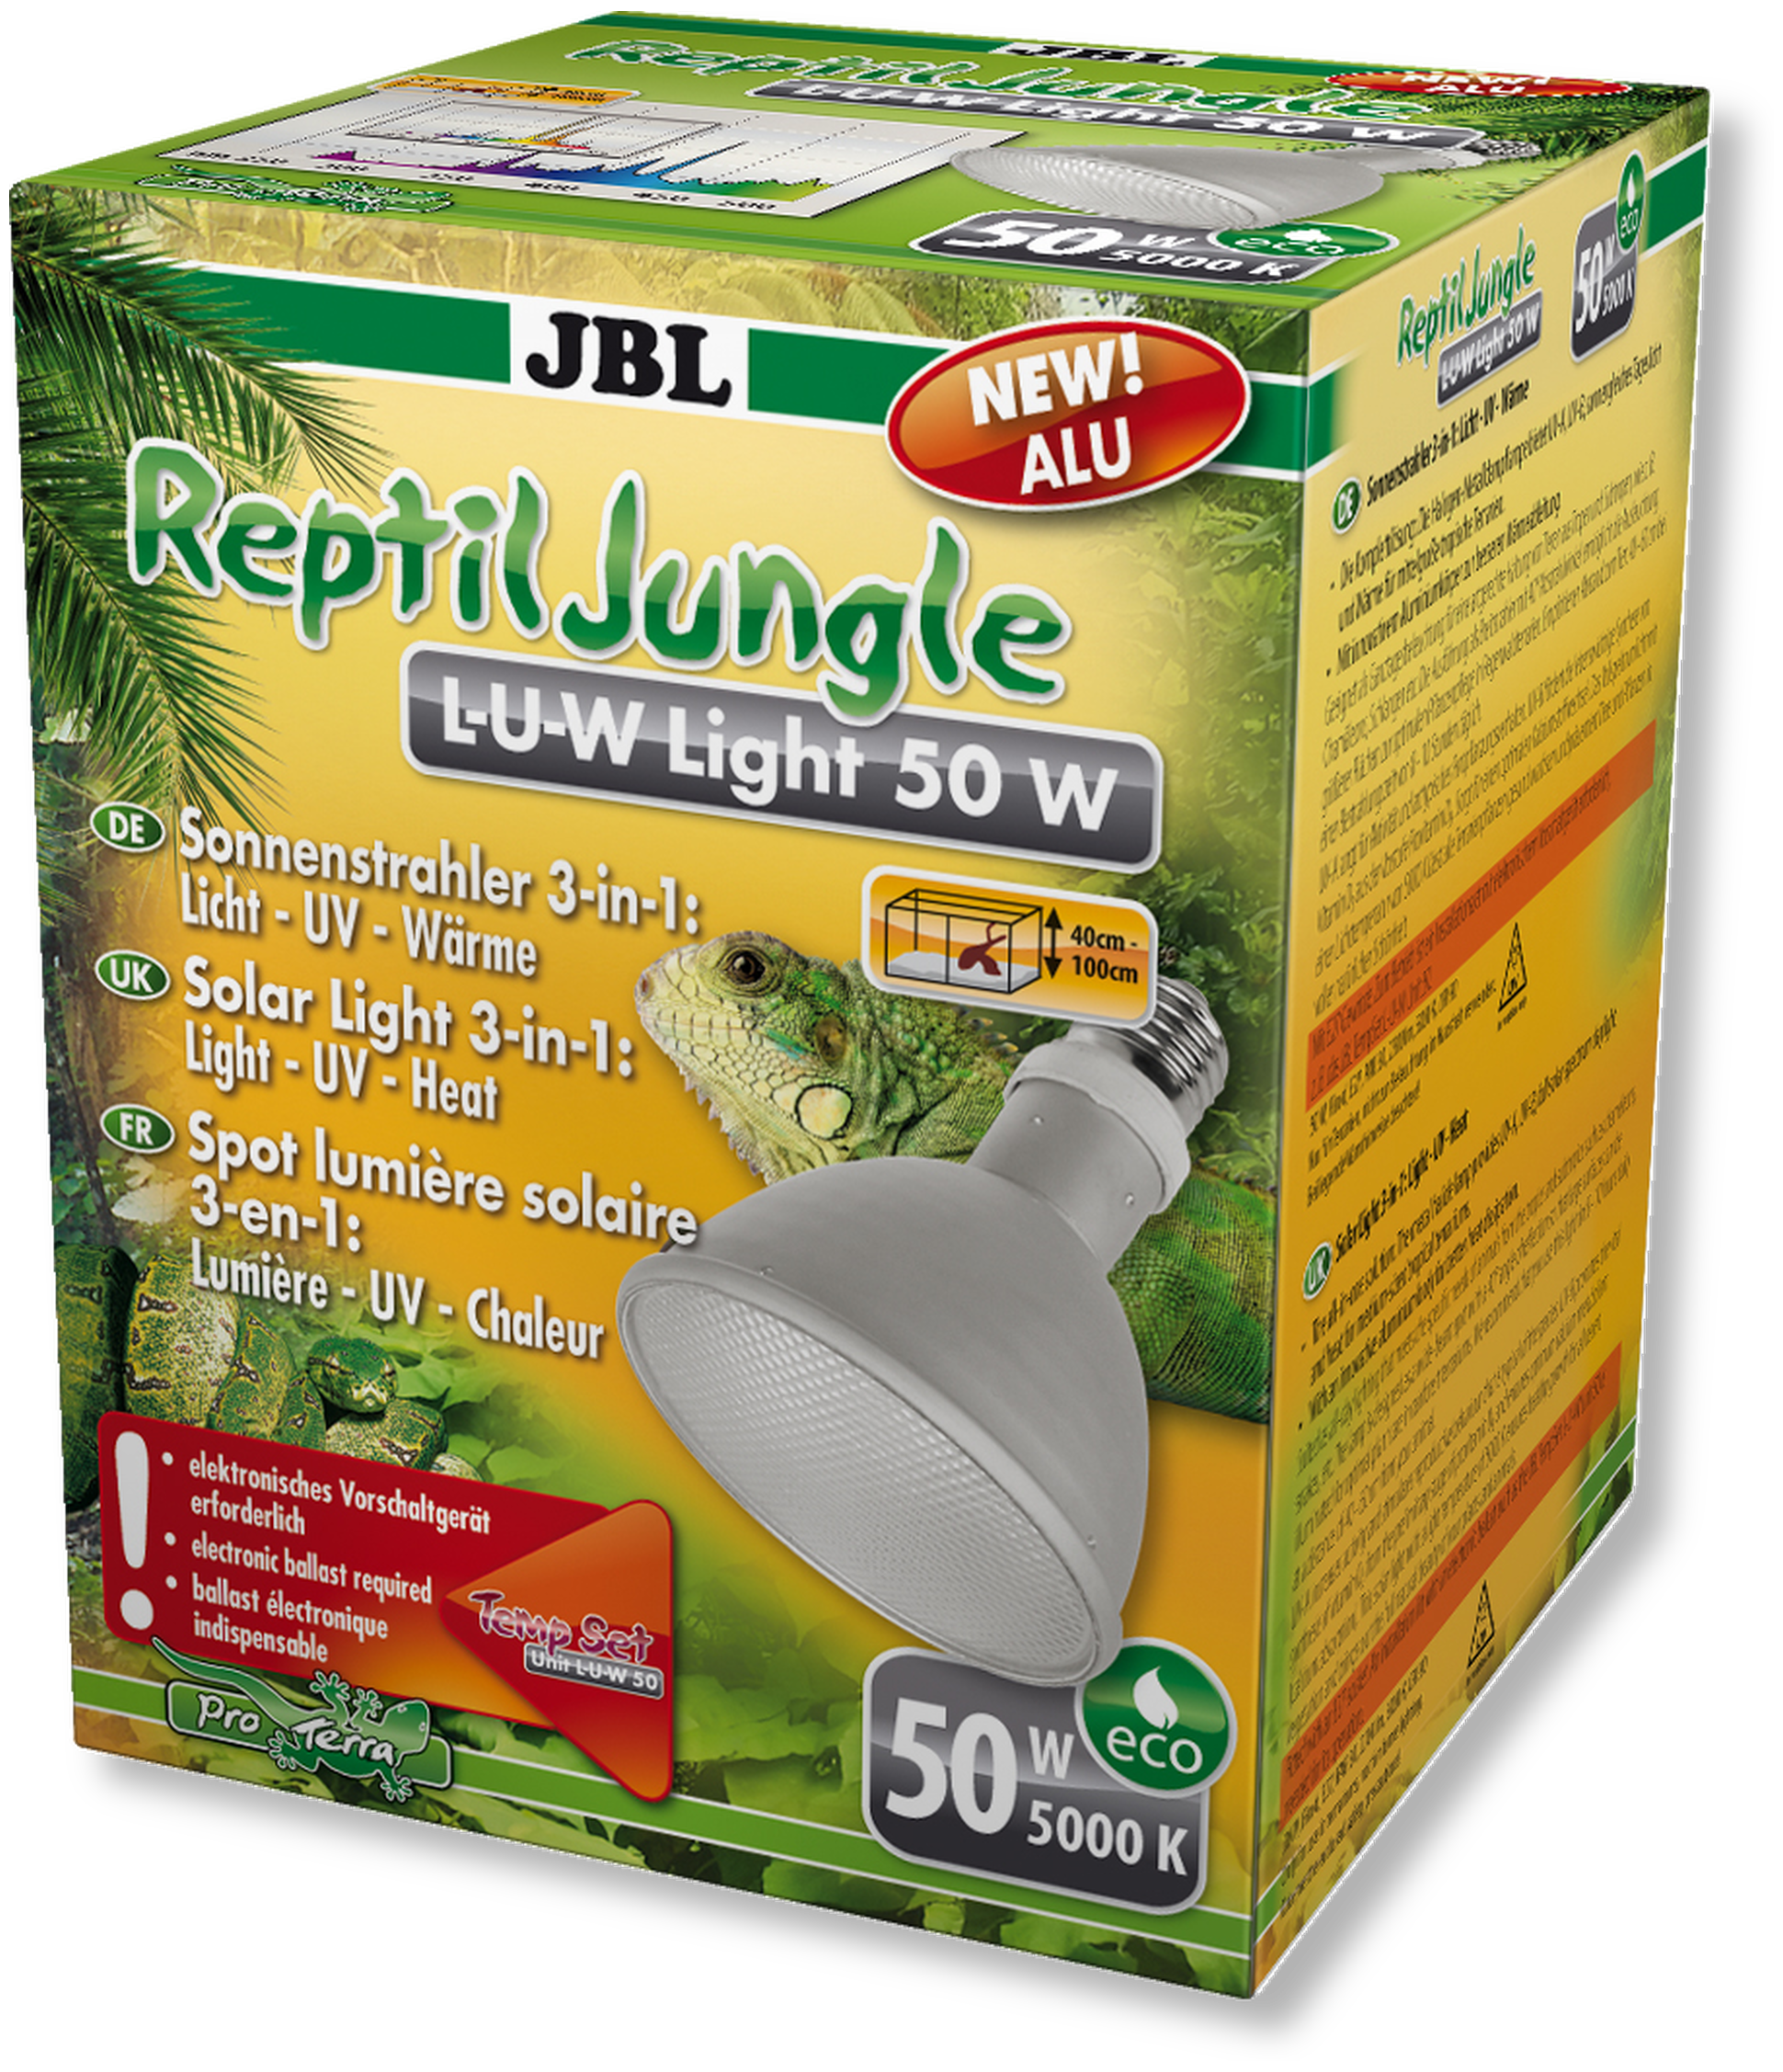 JBL ReptilJungle L-U-W, Light alu, 35 W